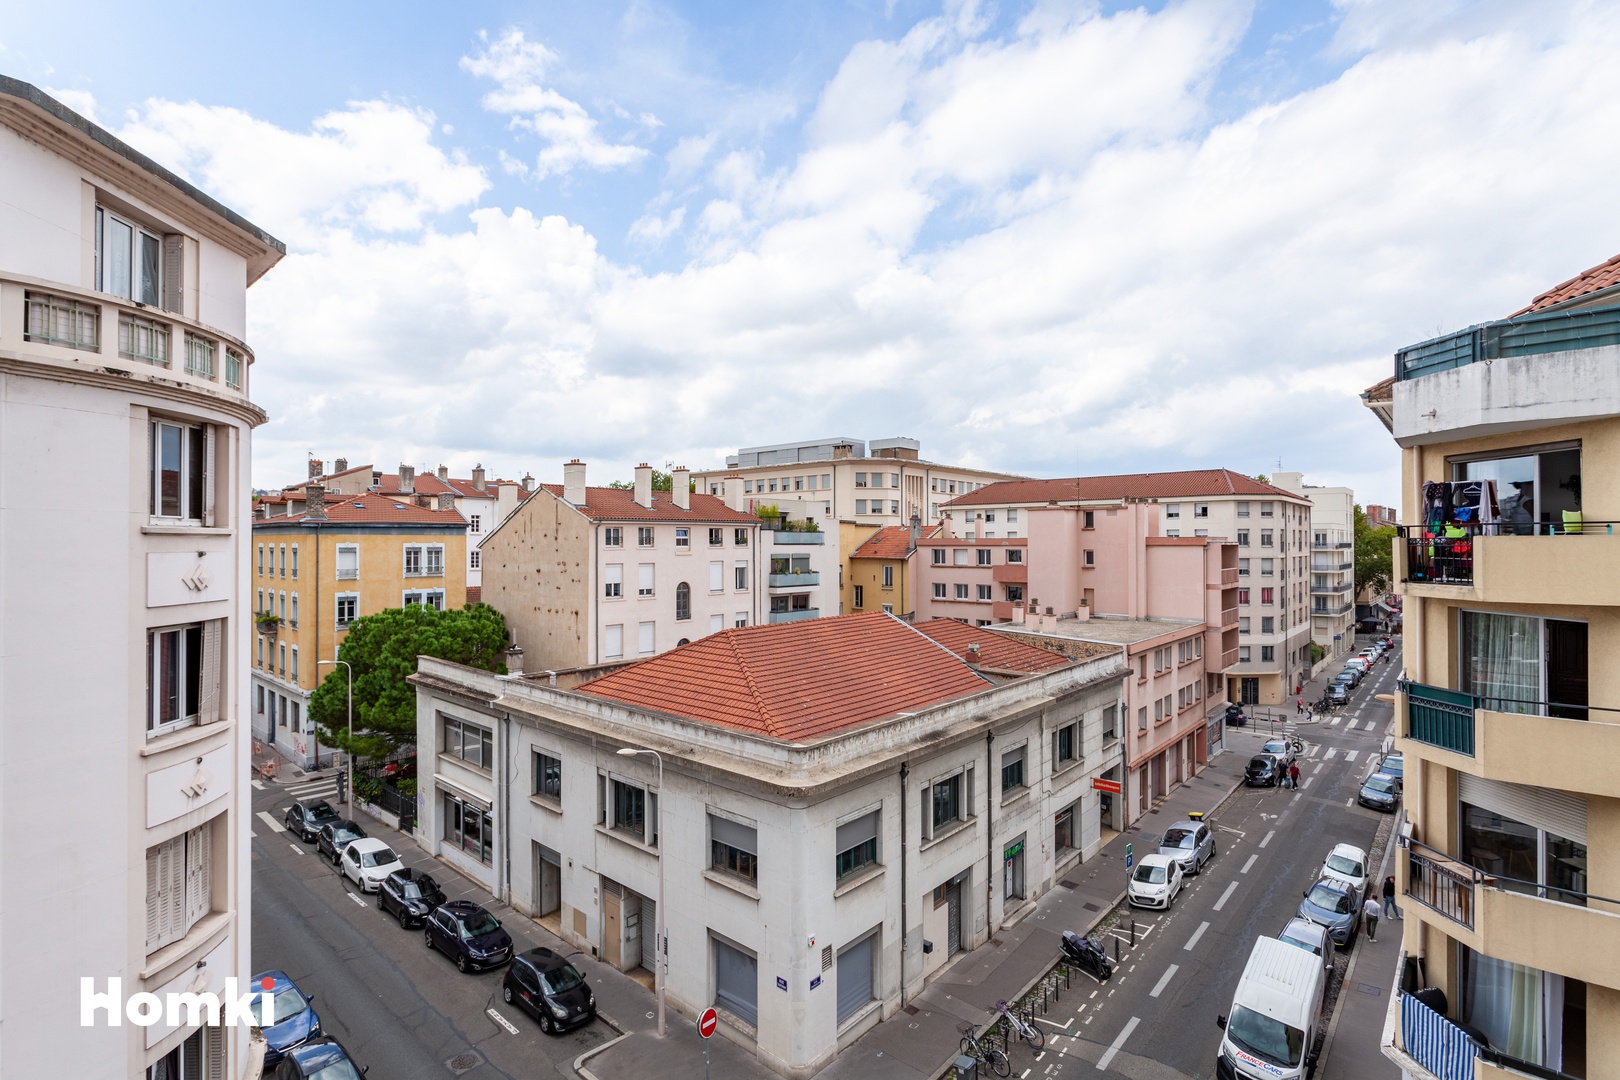 Homki - Vente Appartement  de 68.0 m² à Lyon 69003